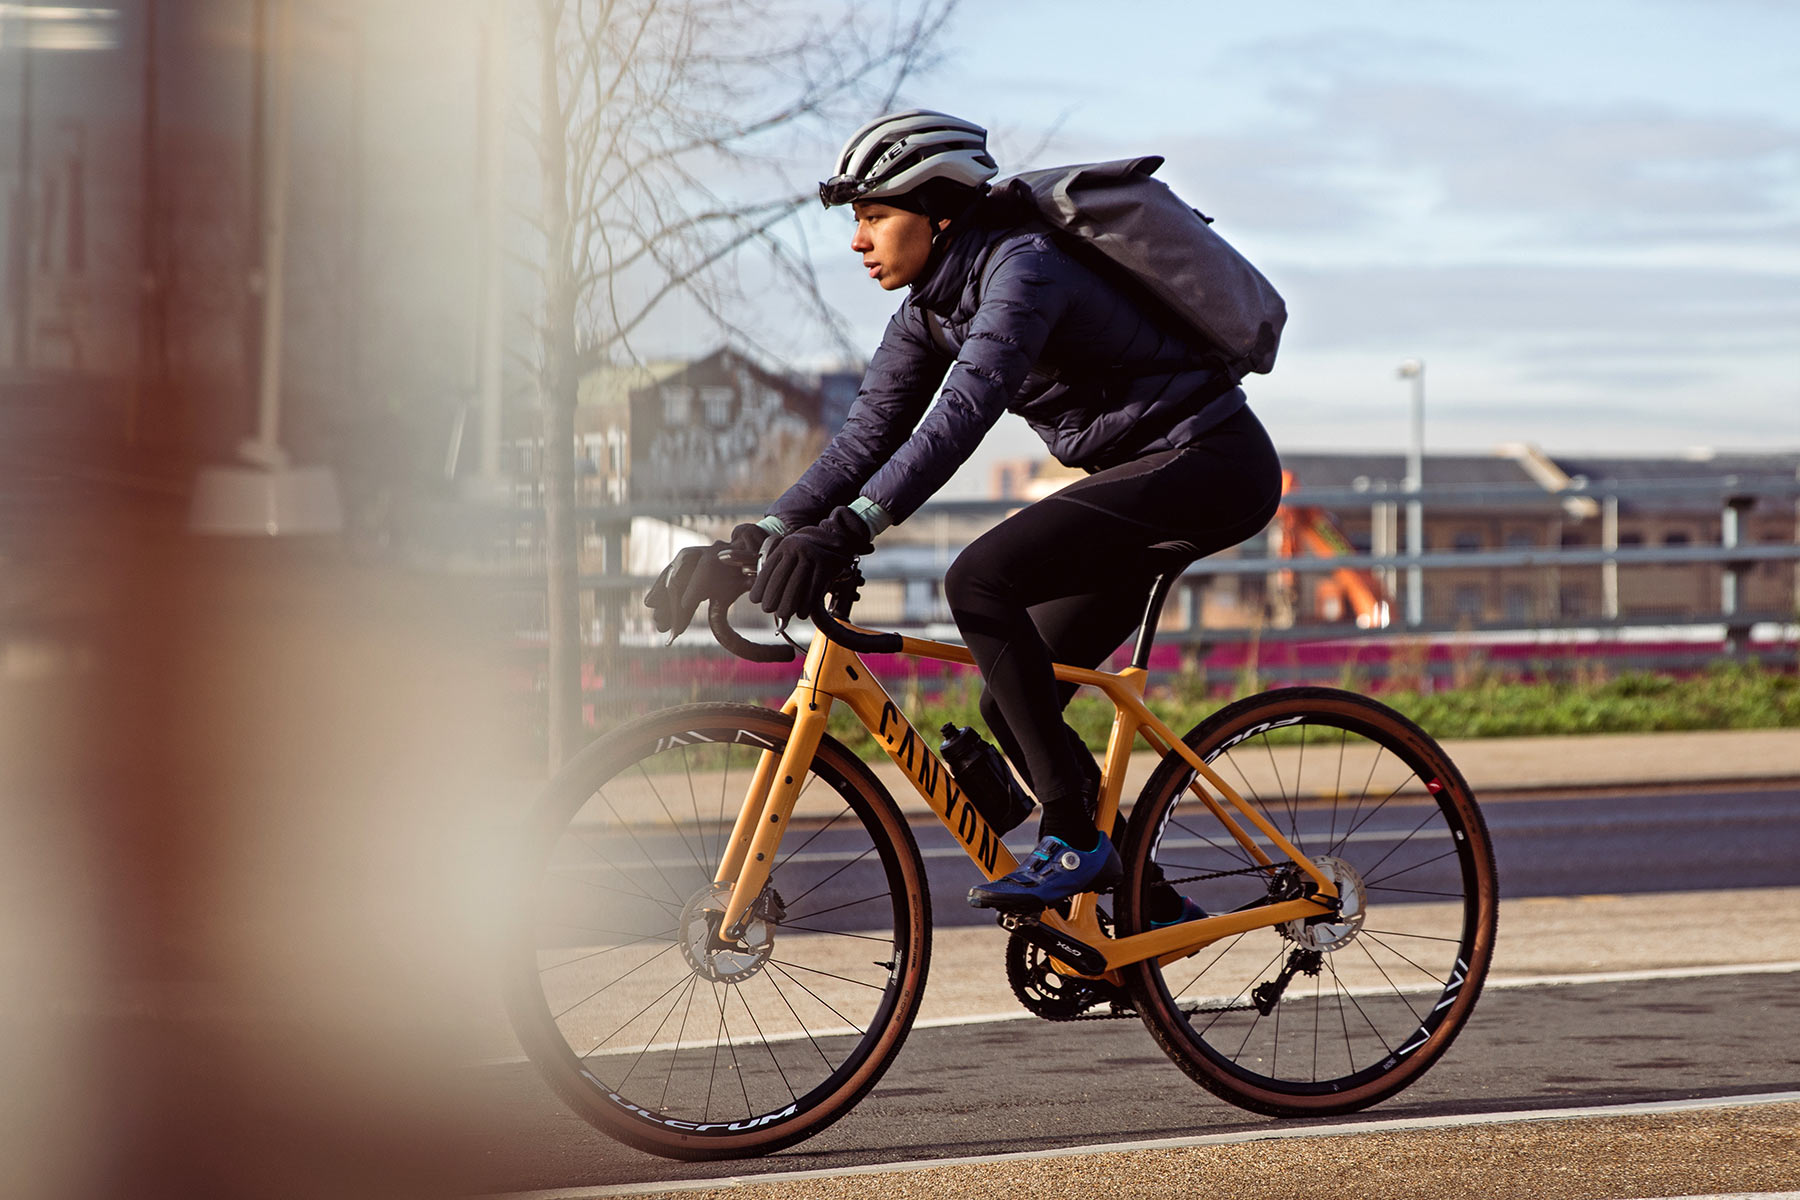 Review: Apidura City Backpack minimalist bike commuter tech - Bikerumor